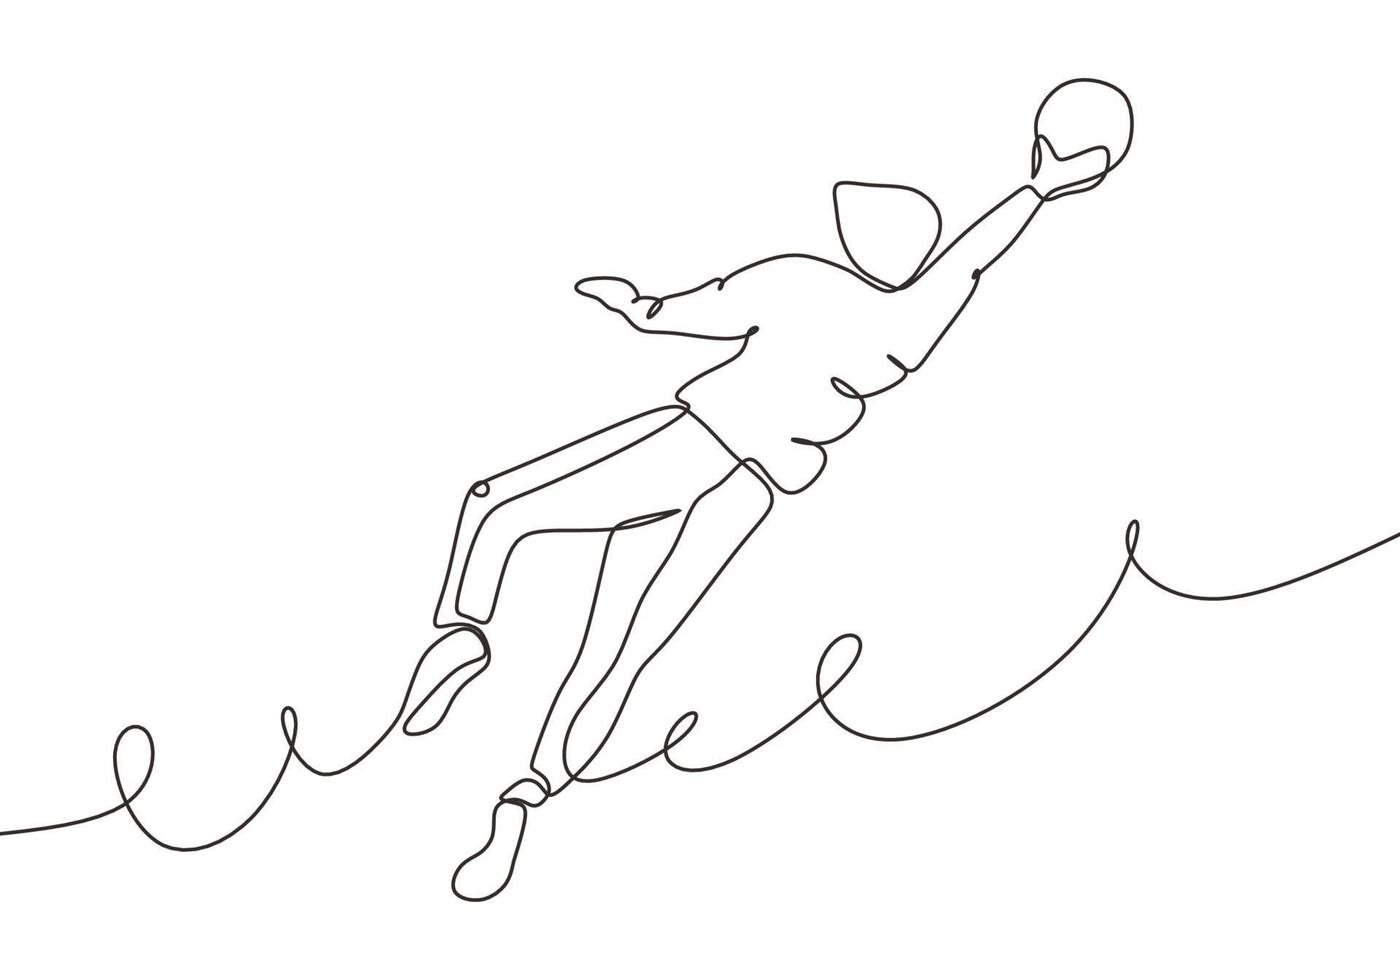 kontinuerlig en linje ritning av fotbollsspelare hoppa och fånga bollen vektor